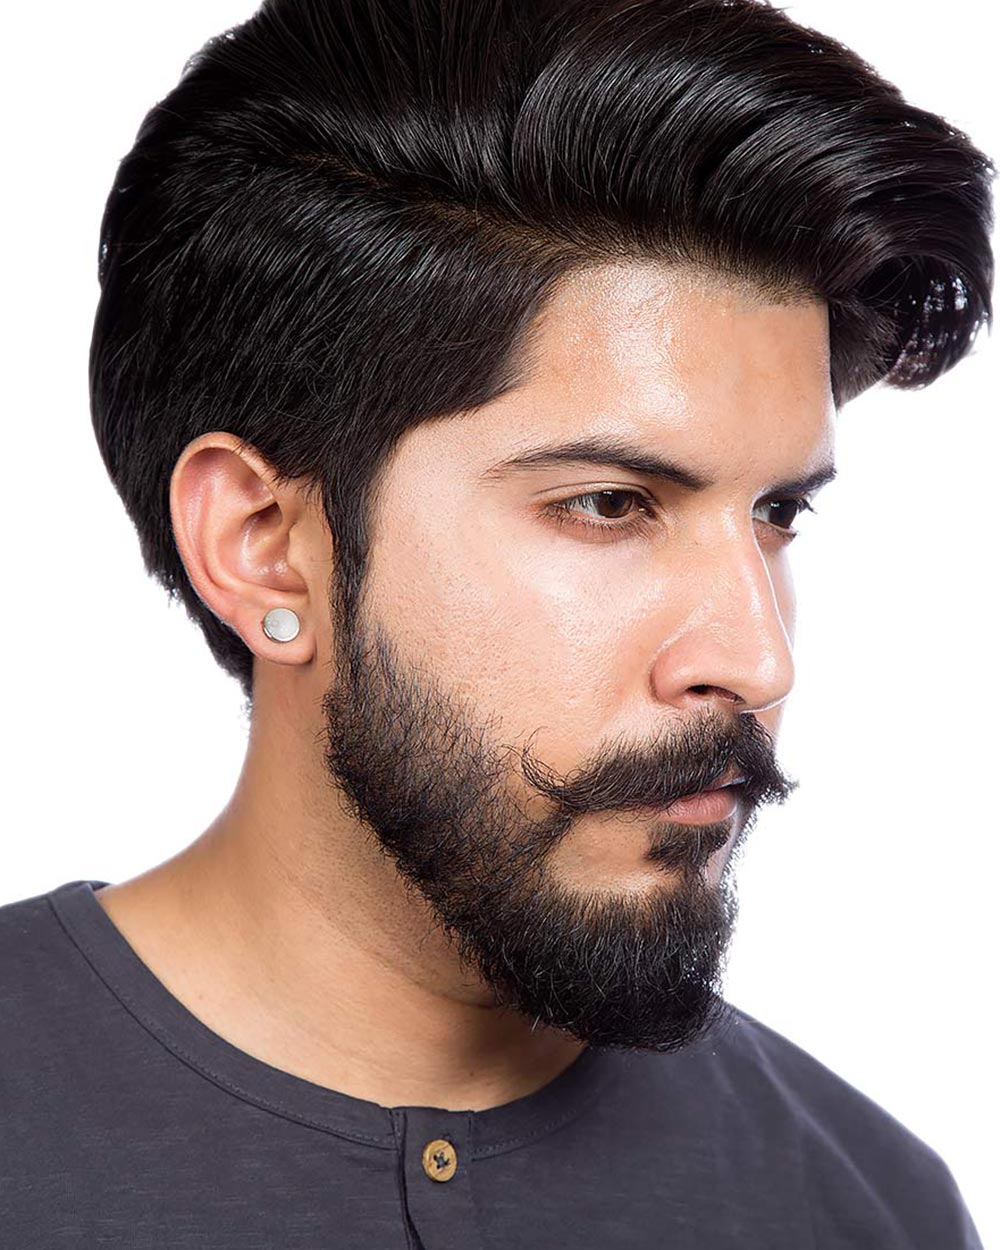 Magnet Stud Earring For Men